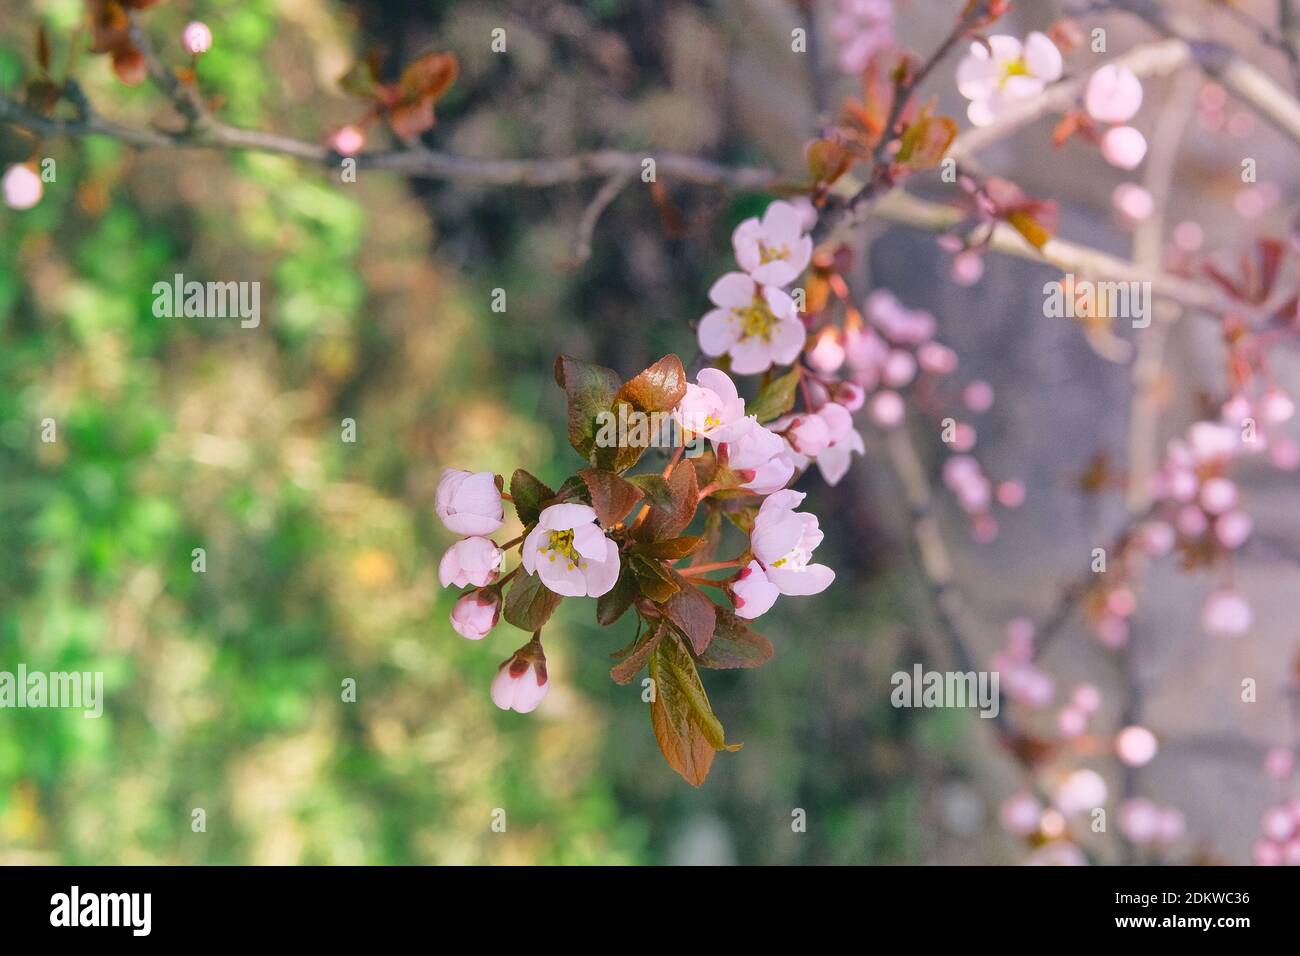 Aprikosenblüten, die mit hellen Blütenblättern blühen. Grußkarte für den Frauentag. Frühling verschwommen Hintergrund der Natur, rosa Farbe. Stockfoto